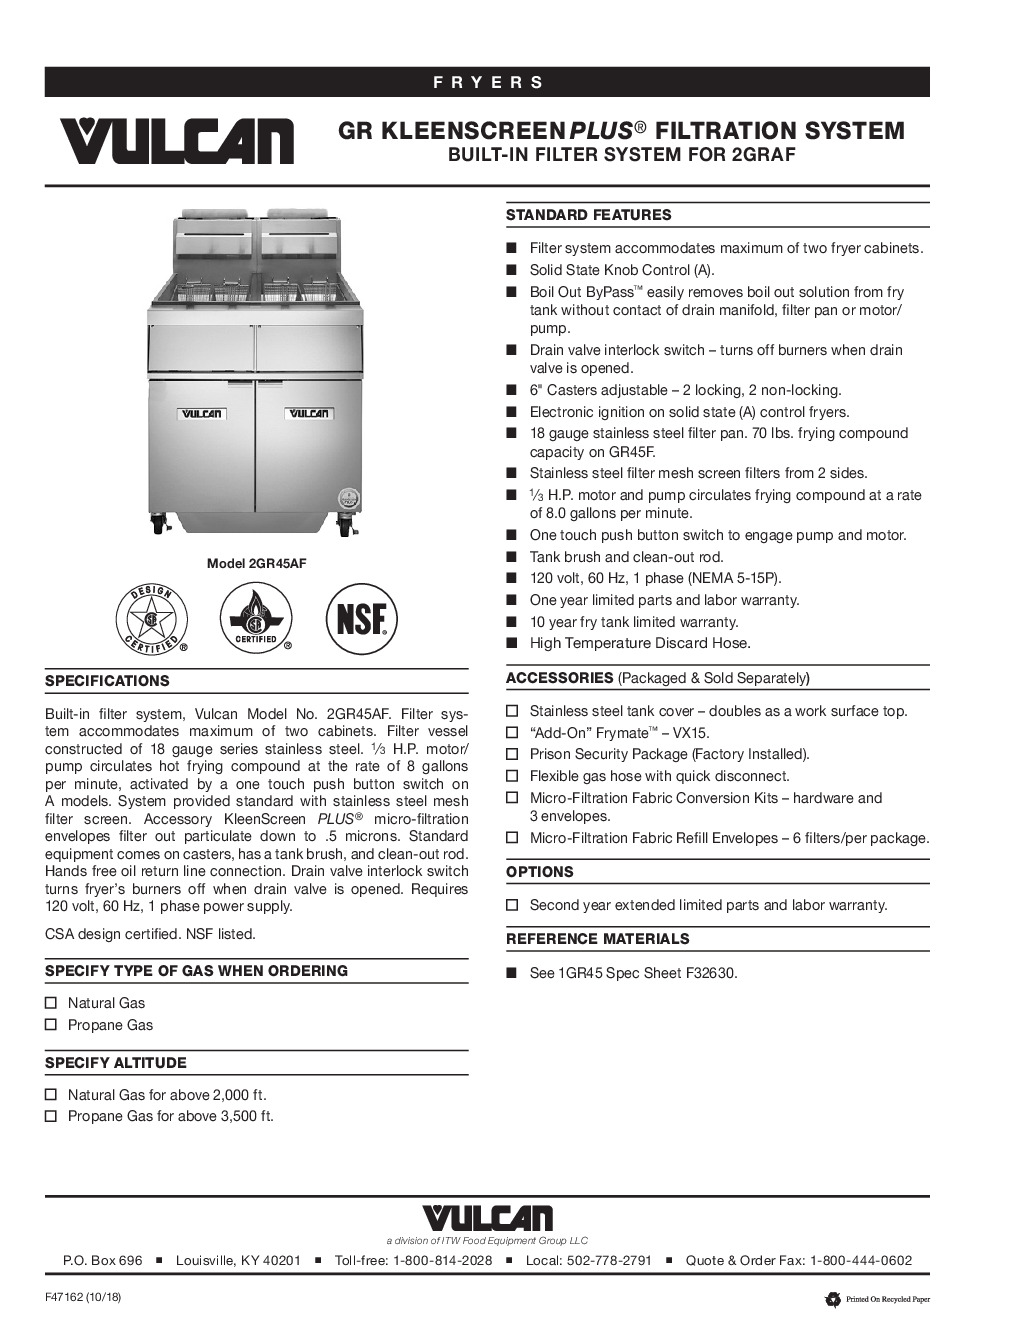 Vulcan 1GR45A Full Pot Floor Model Gas Fryer